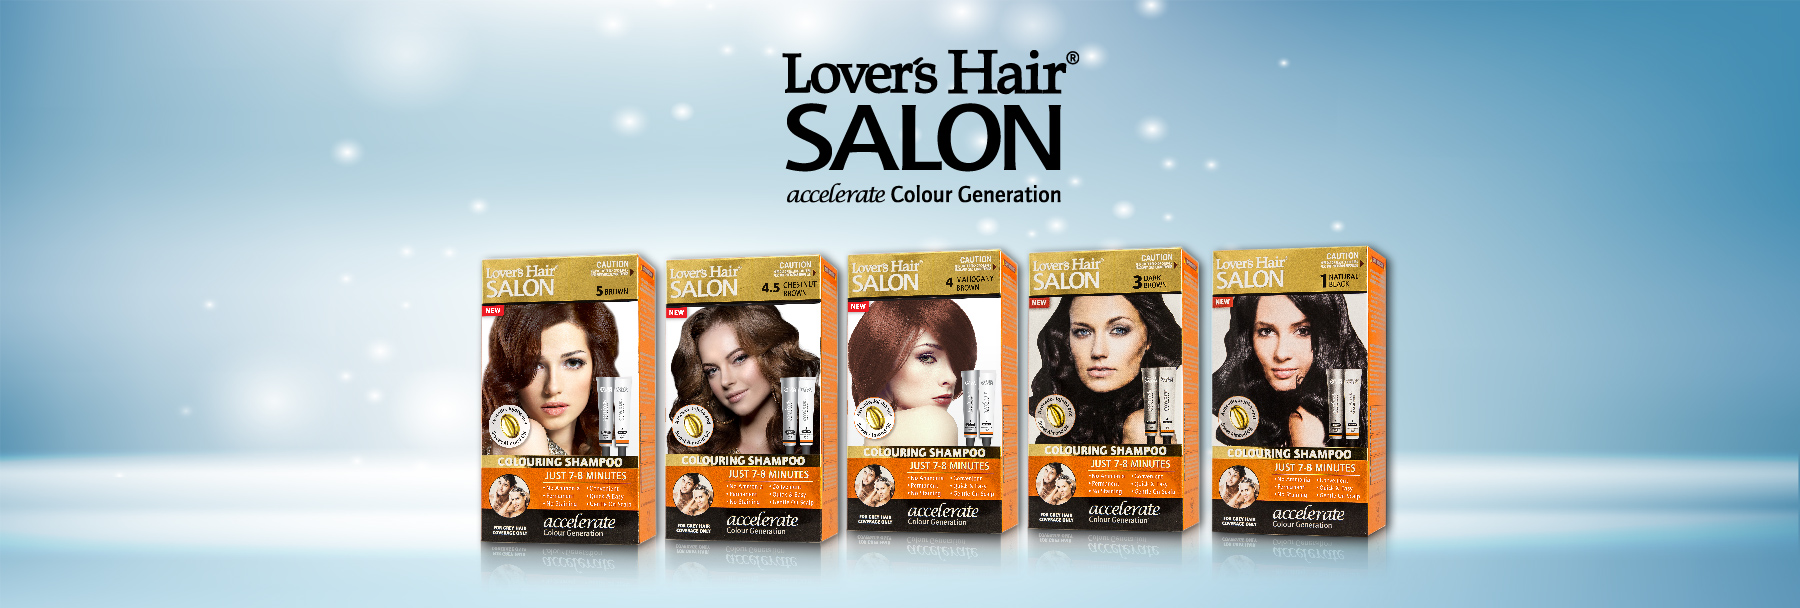 LOVER'S HAIR SALON-COLOURING SHAMPOO-2 x 2.0 oz (60ML) BROWN No.5